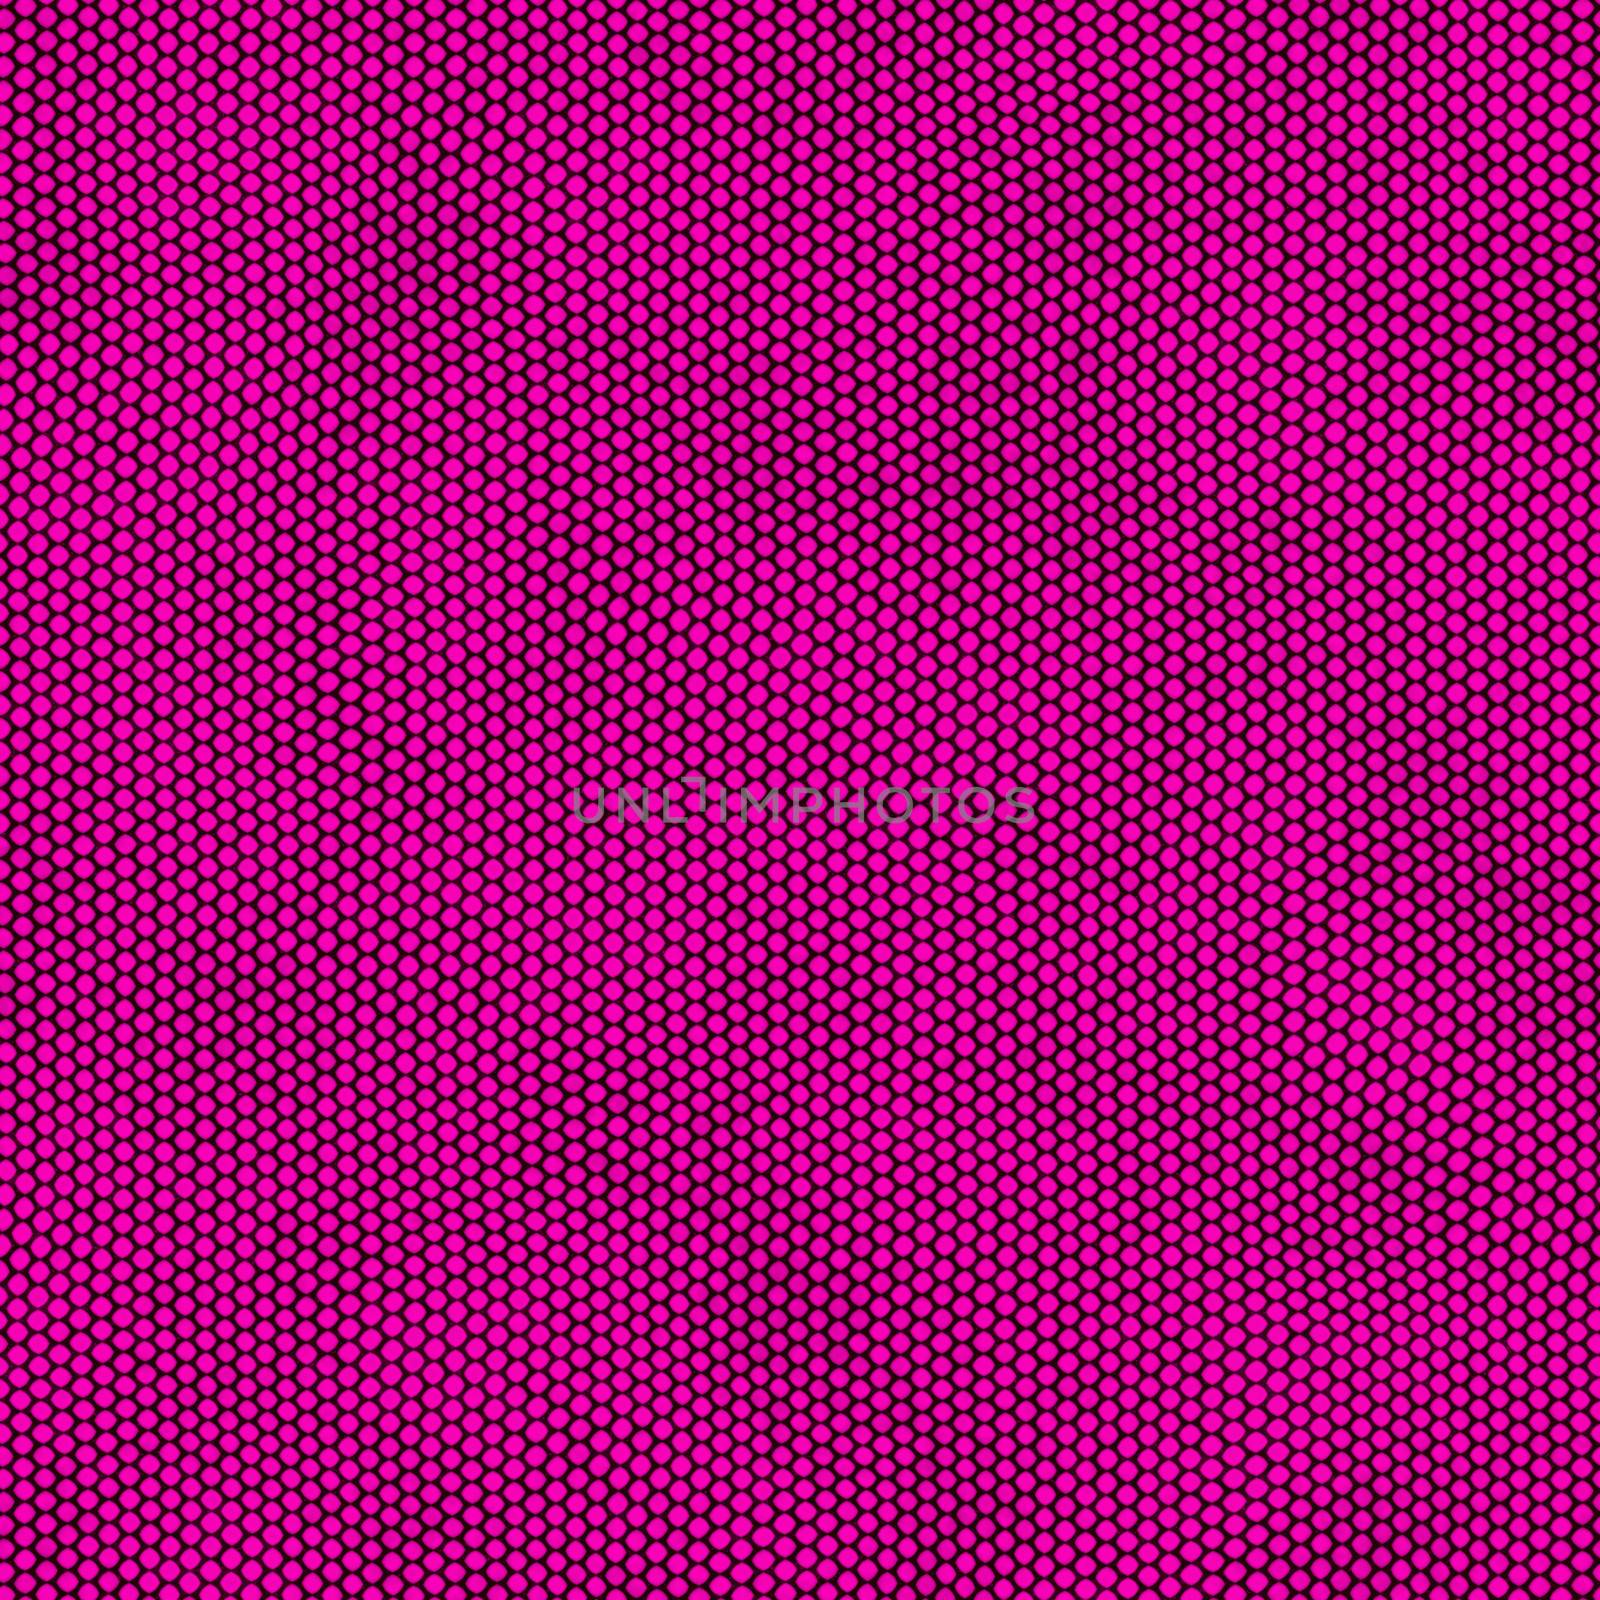 purple seamless halftone dot pattern background